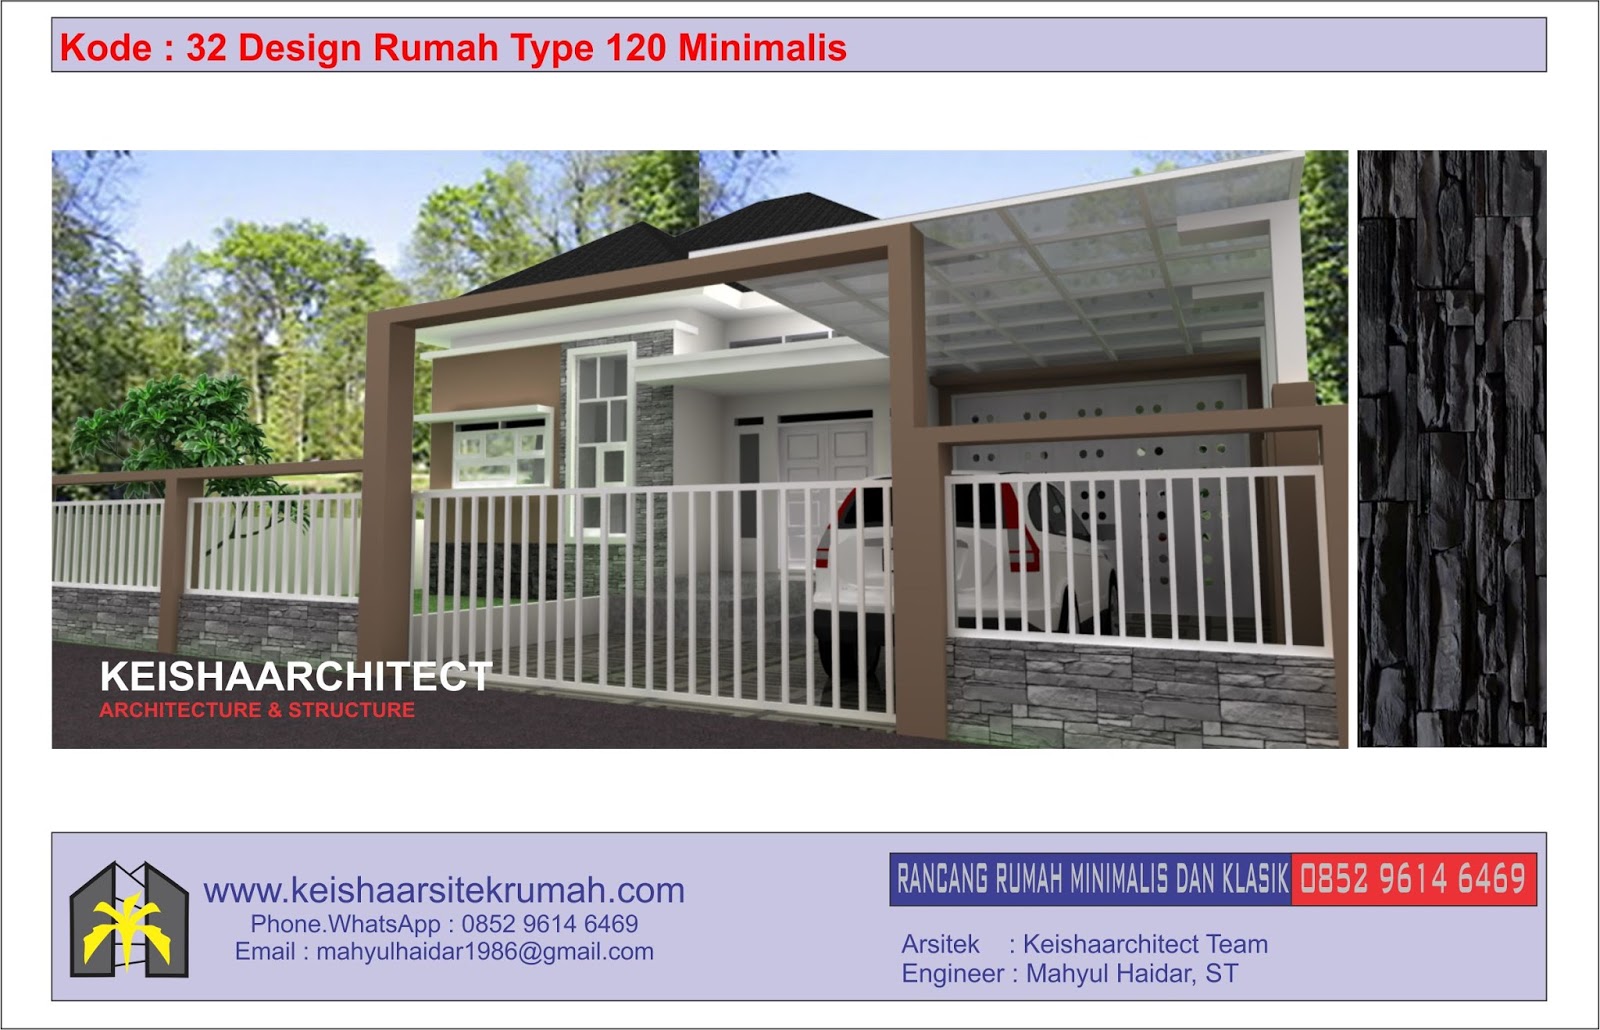 Kode 32 Design Rumah Type 120 Lokasi Lampaseh Banda Aceh